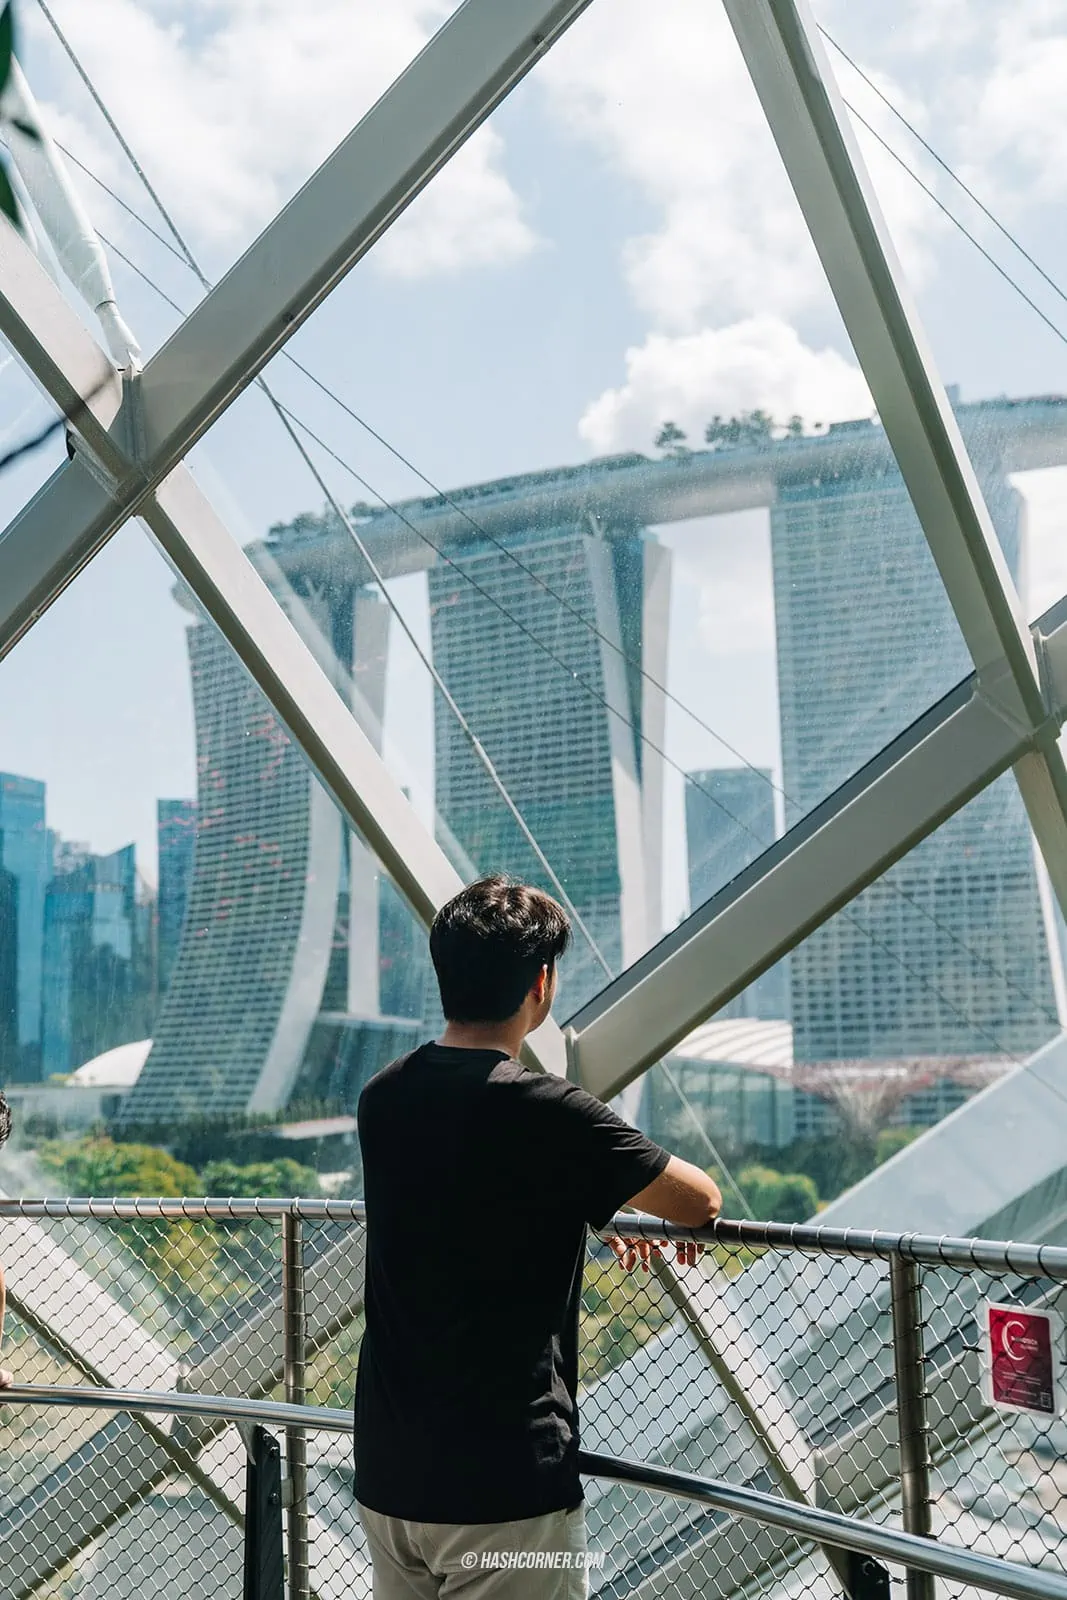 รีวิว สิงคโปร์ (Singapore) เที่ยวจัดเต็ม 28 ที่เที่ยว แบบฉ่ำ!